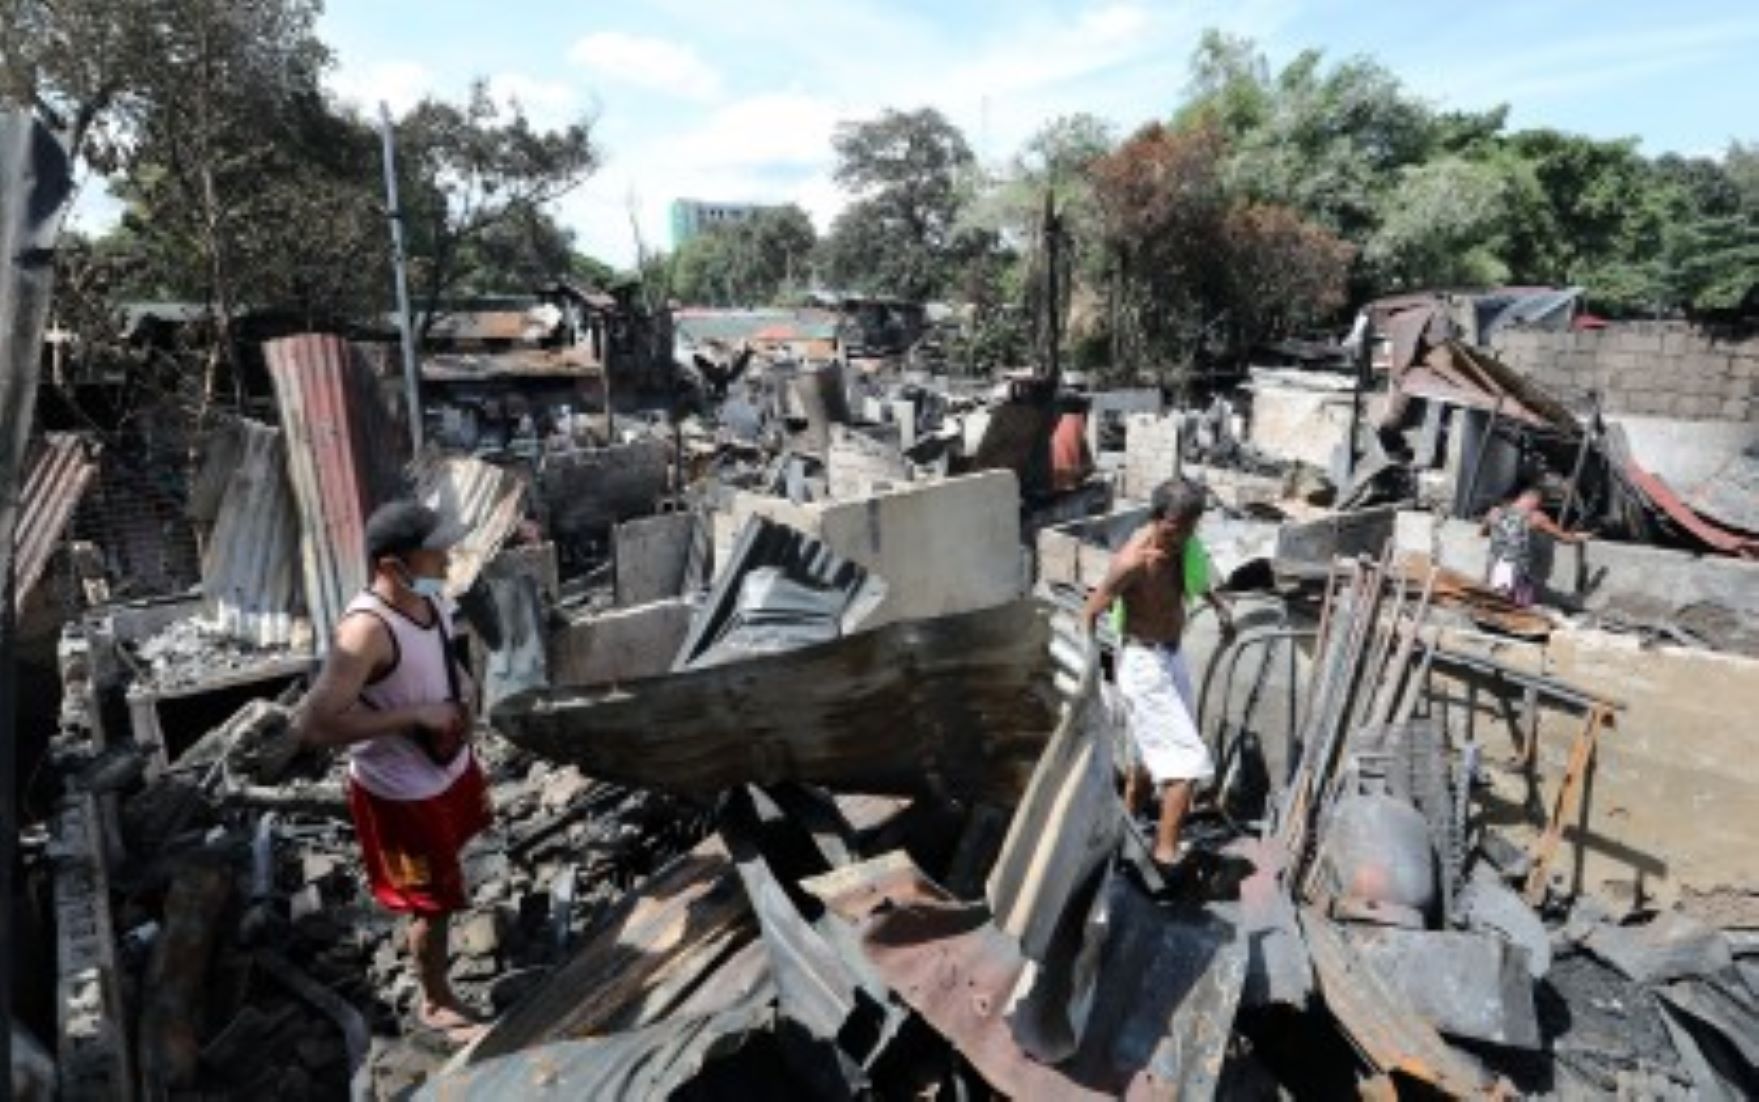 Two Children Died In Philippine Fire